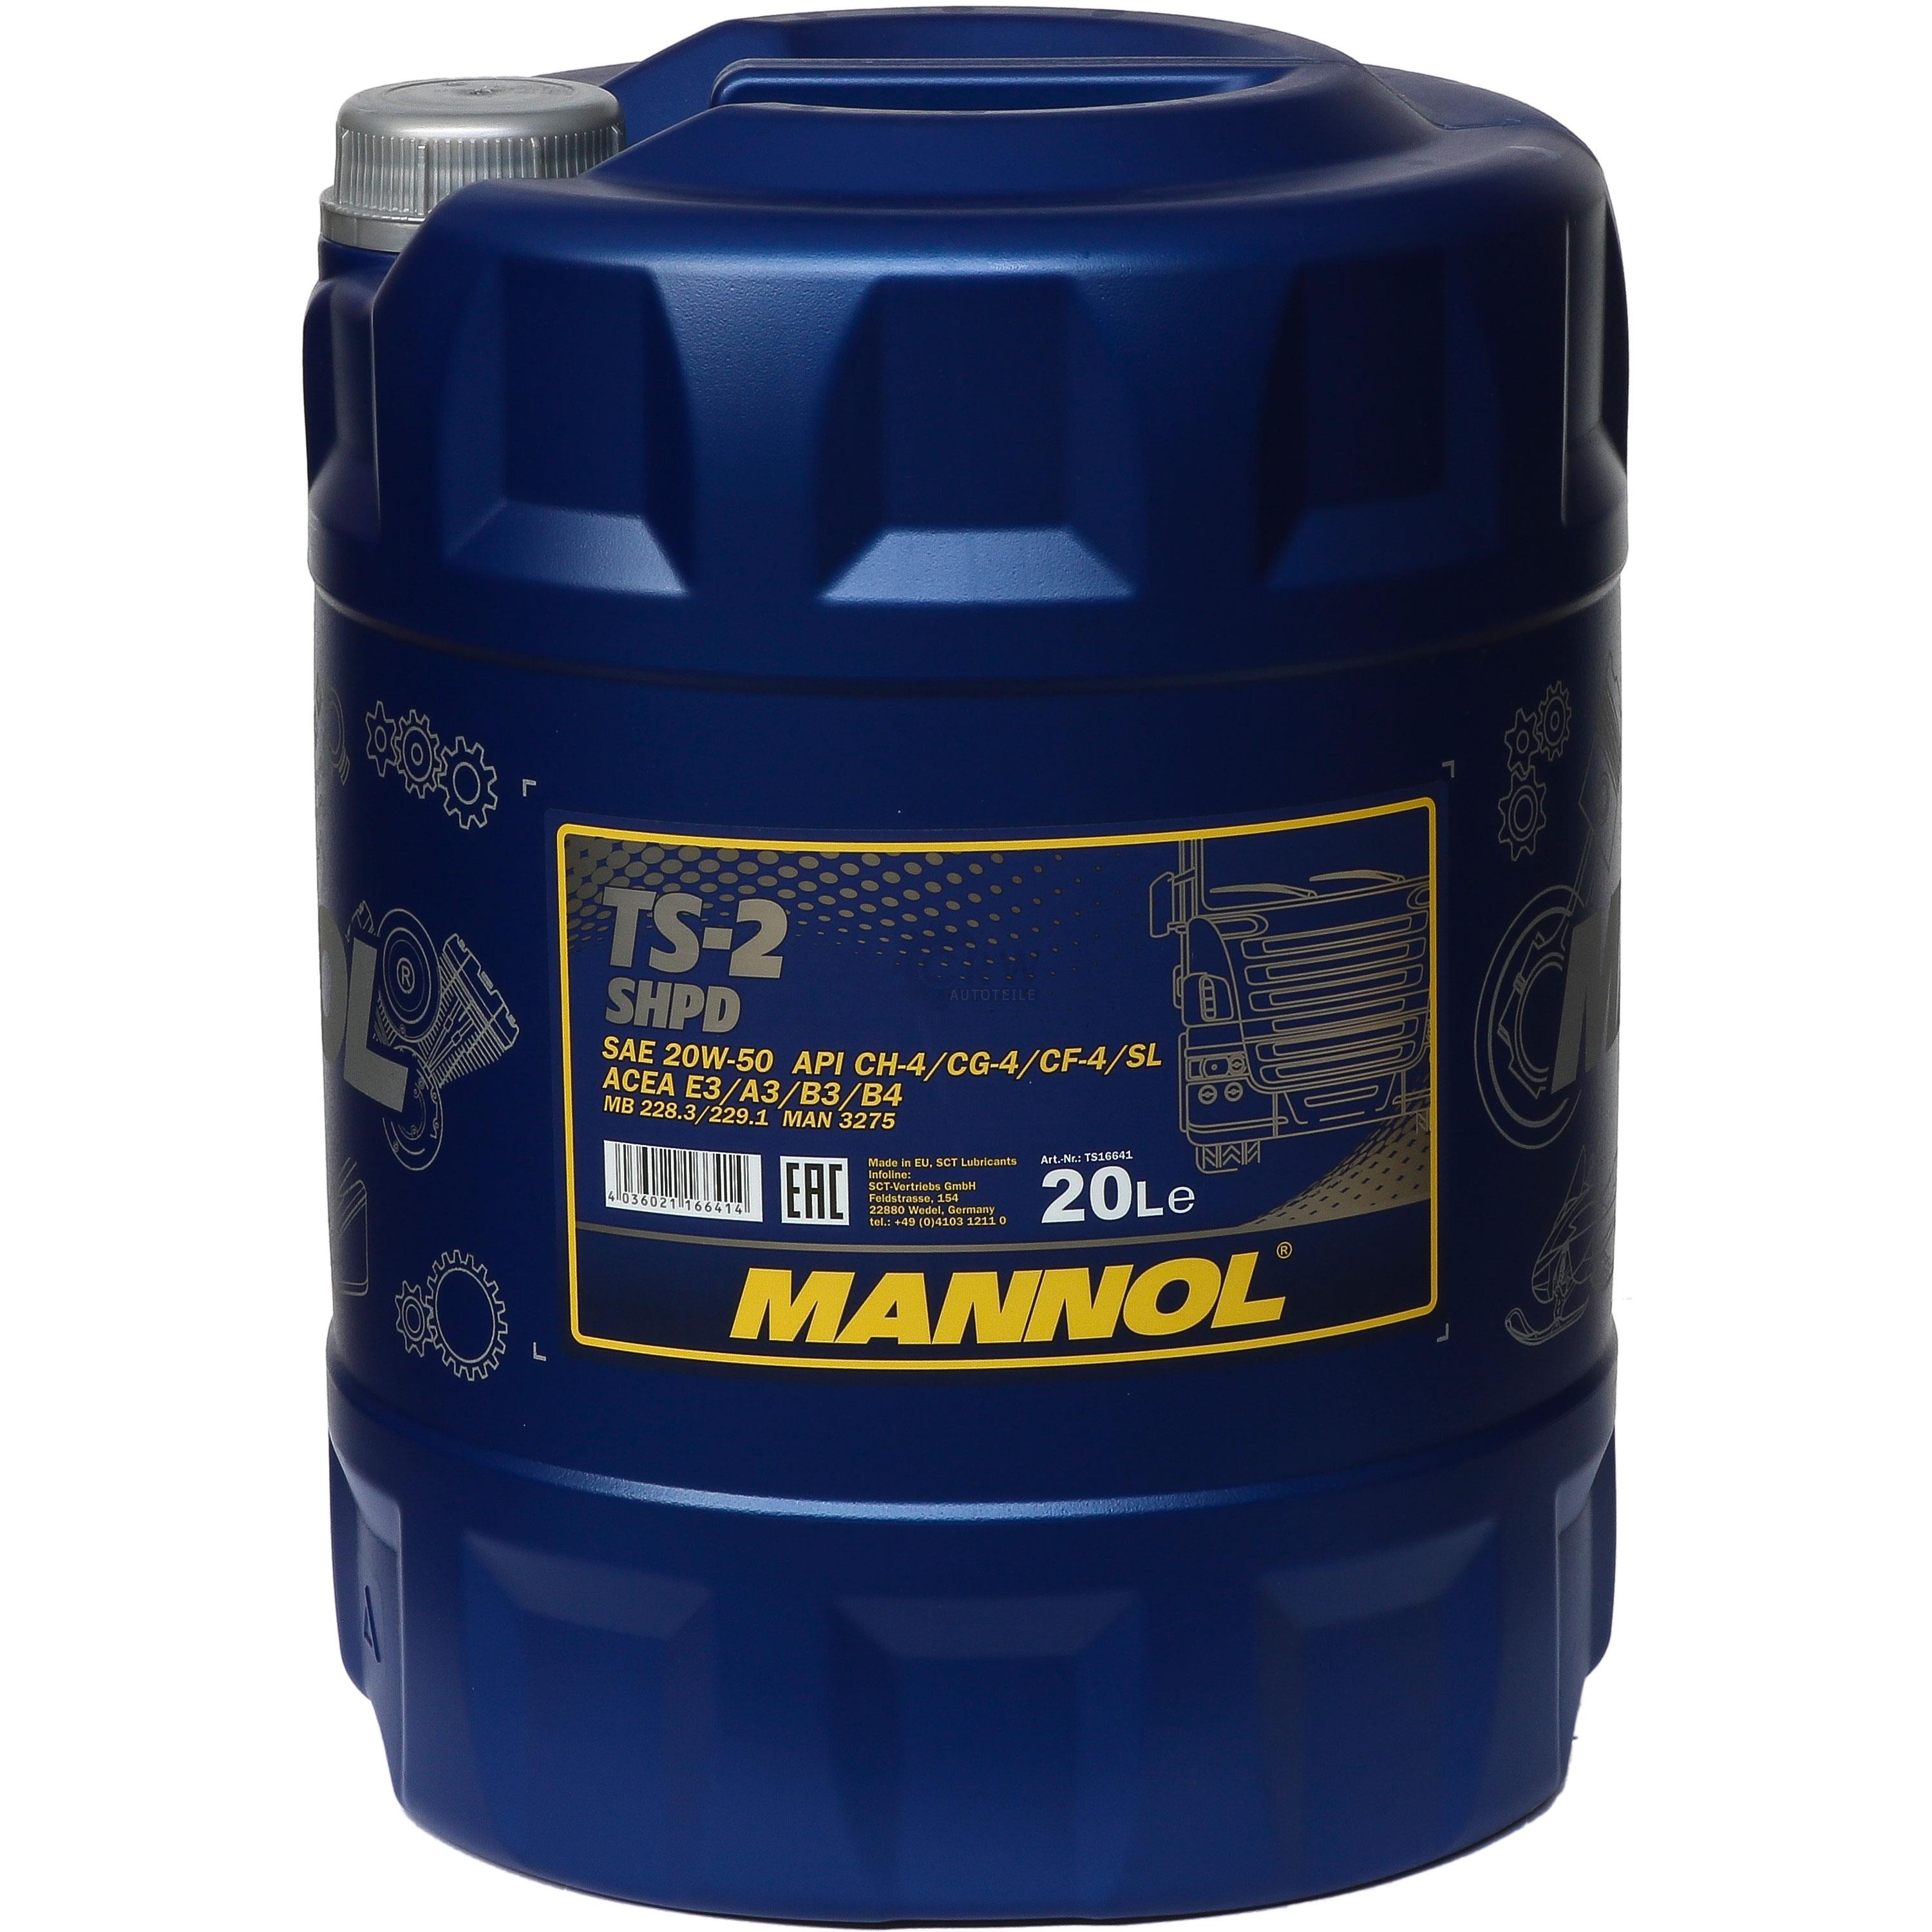 20 Liter Orignal MANNOL Motoröl TS-2 SHPD 20W-50 API CH-4/CG-4/CF-4/SL